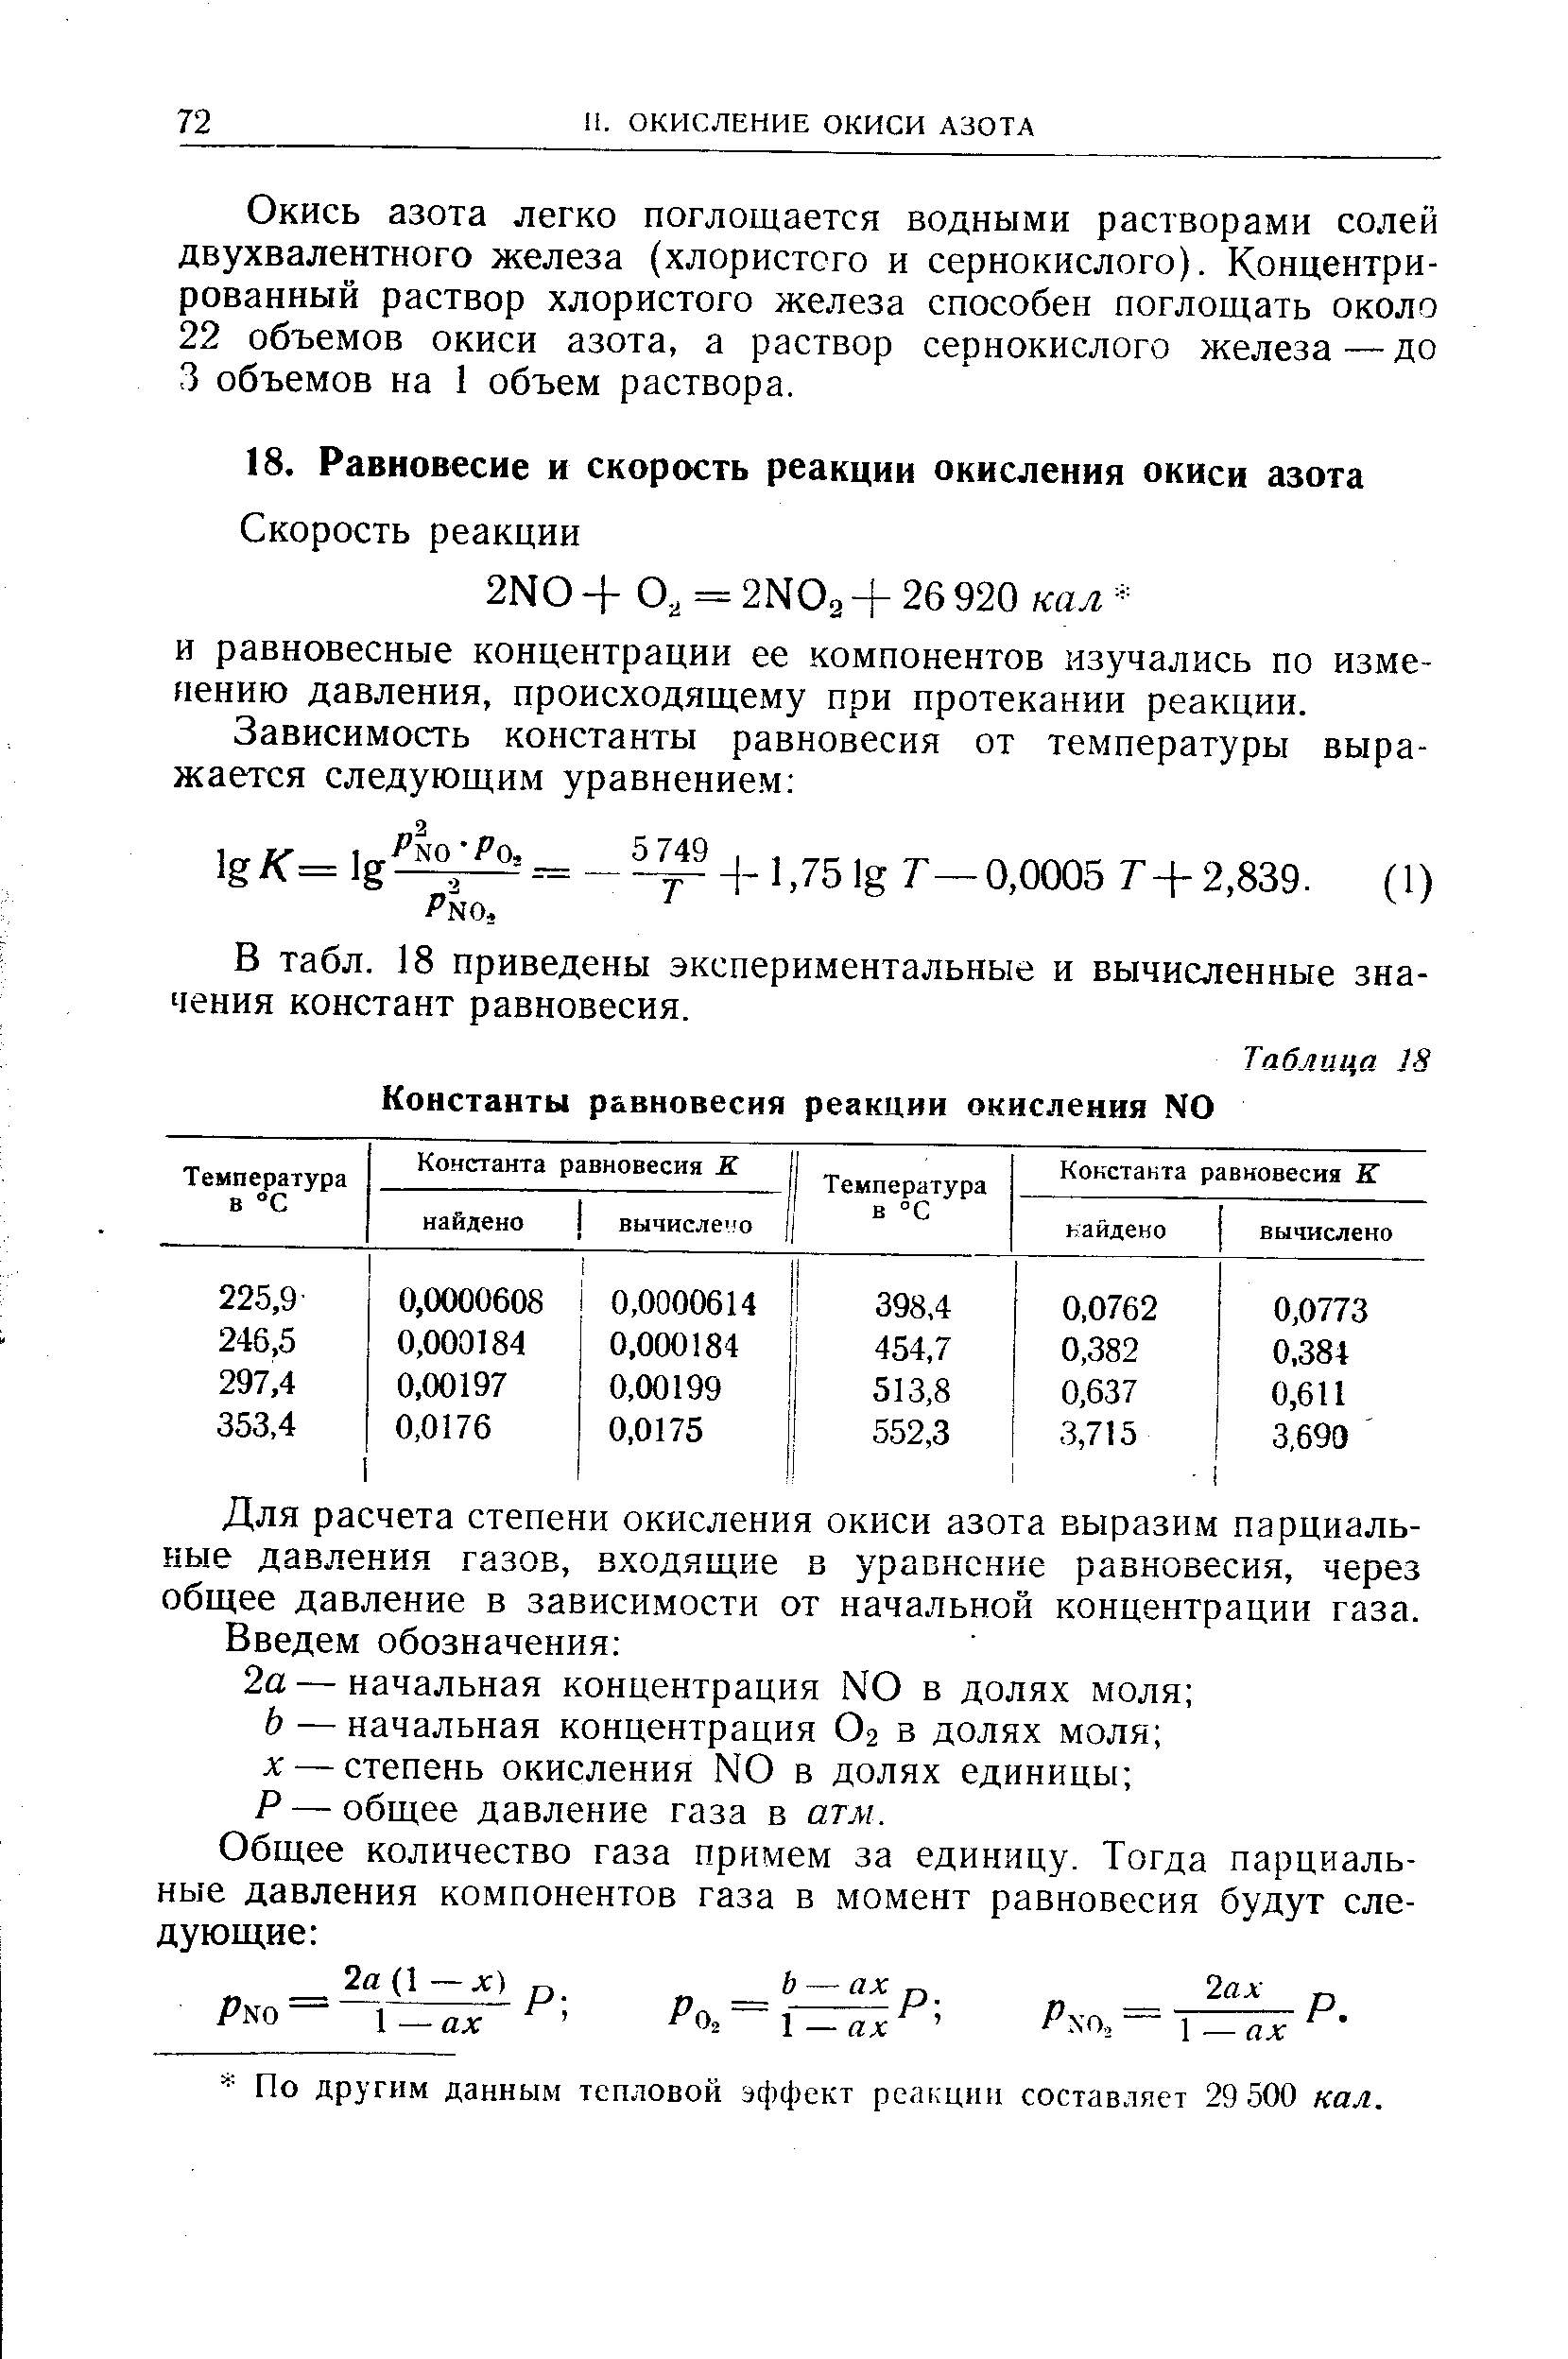 В табл. 18 приведены экспериментальные и вычисленные значения констант равновесия.